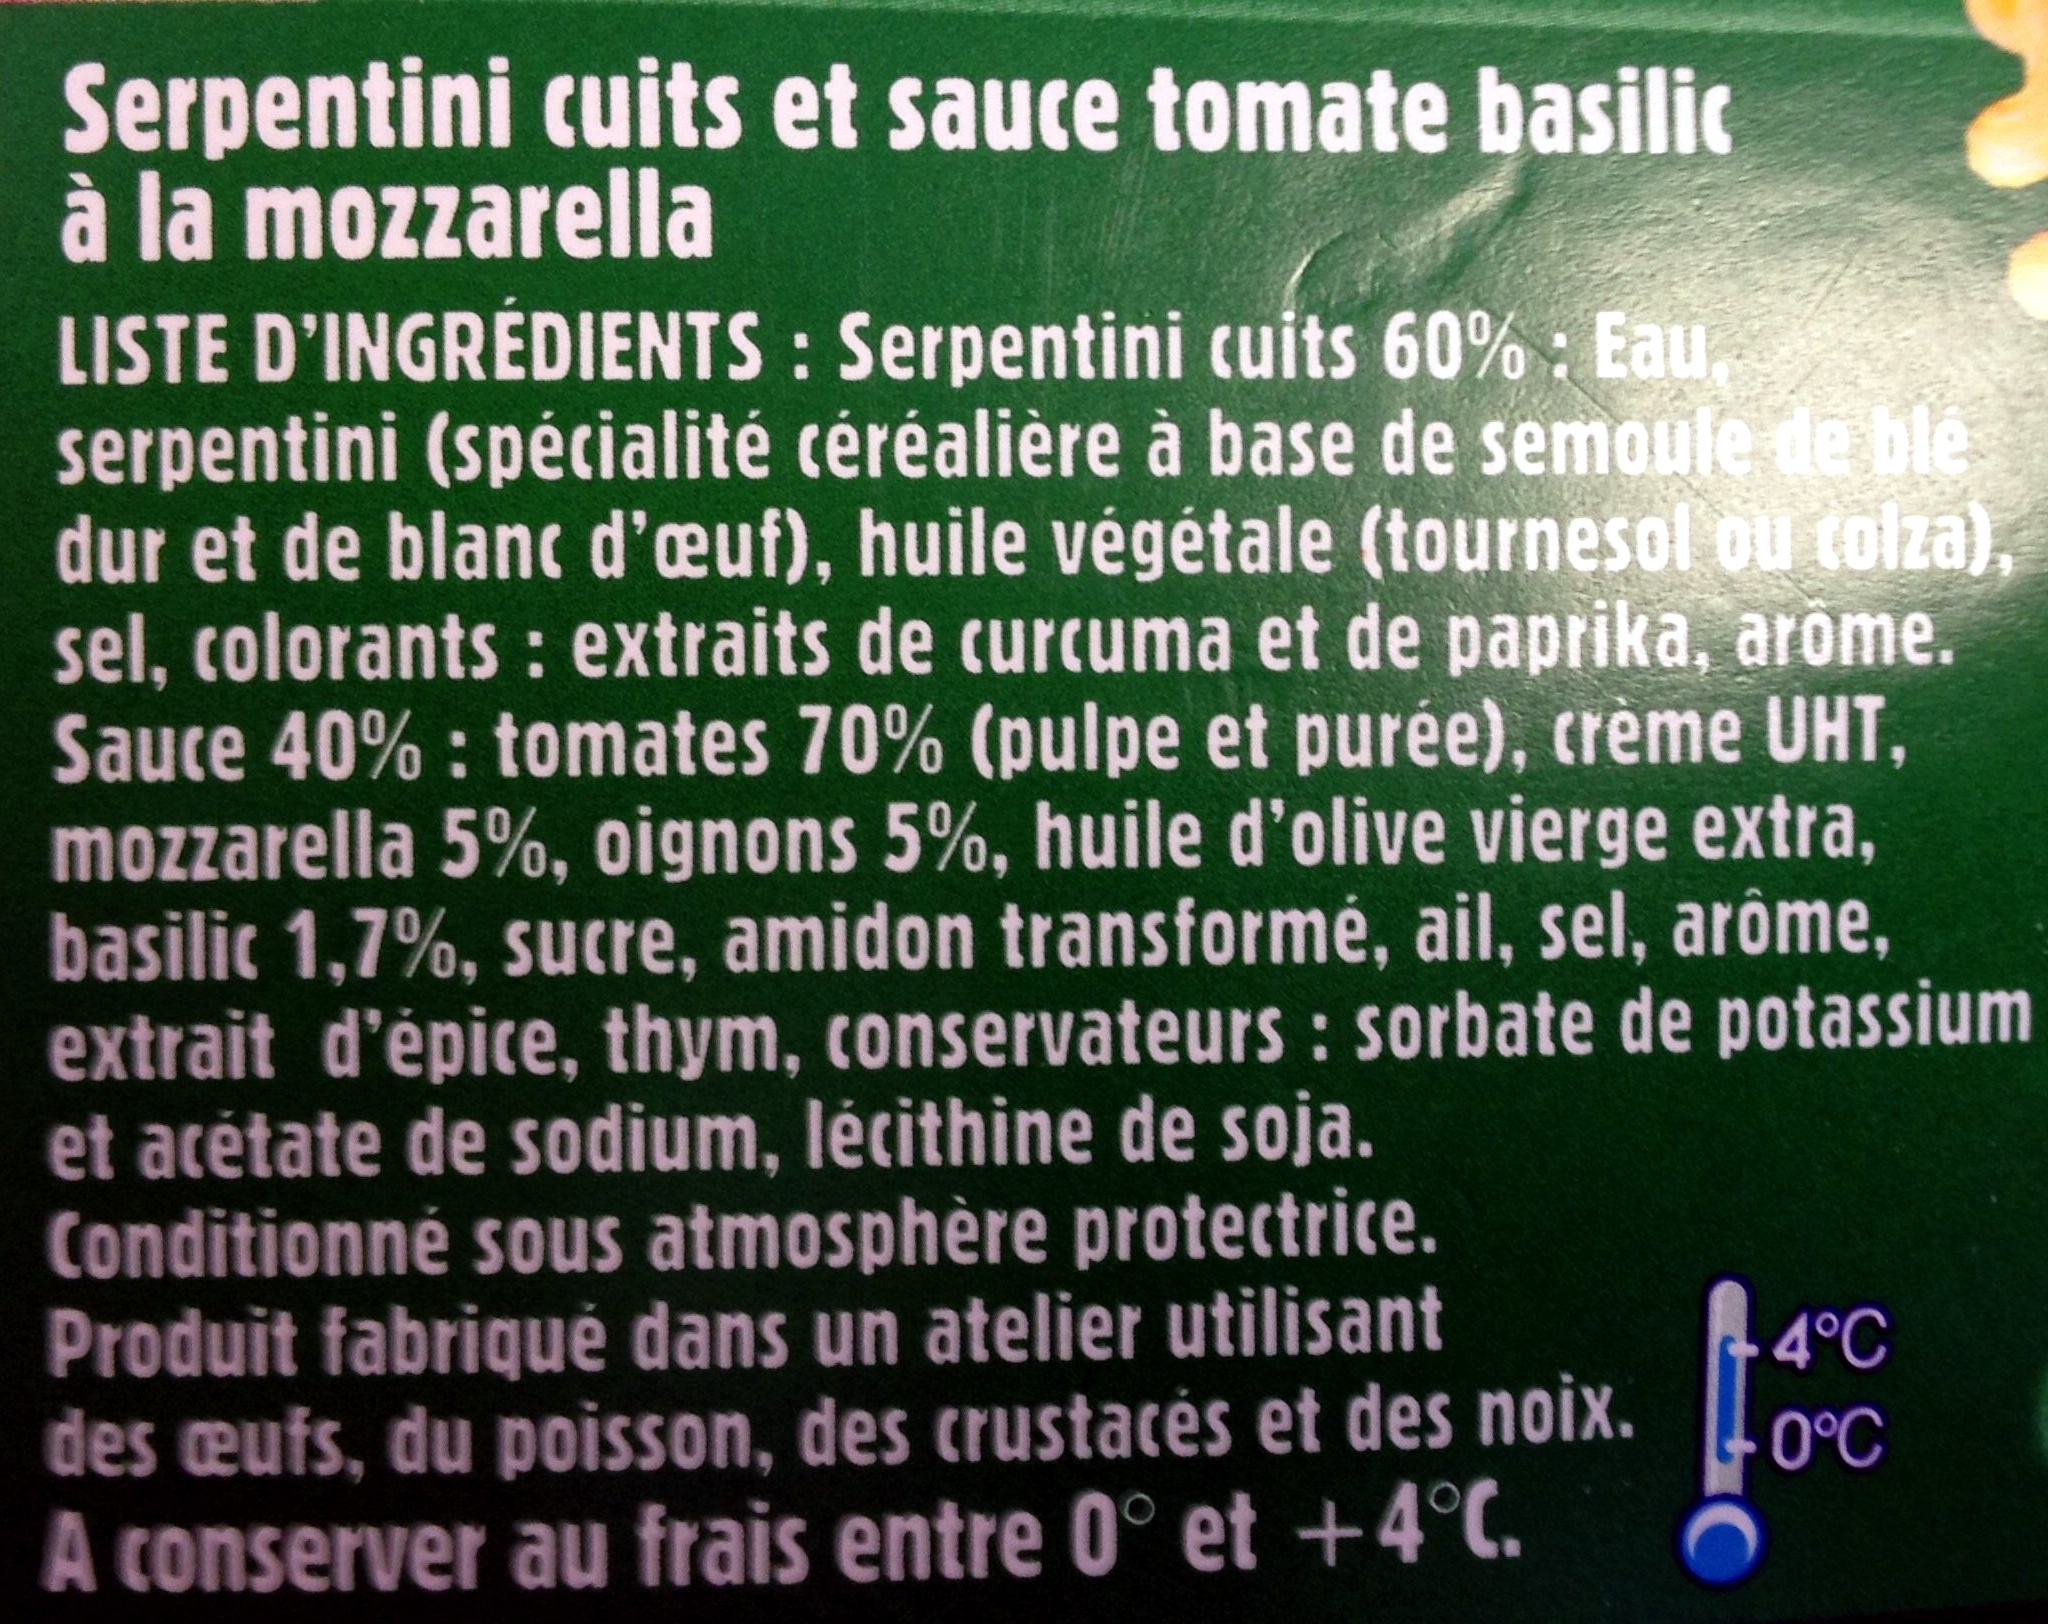 Serpentini cuits et sauce tomate basilic - Ingrédients